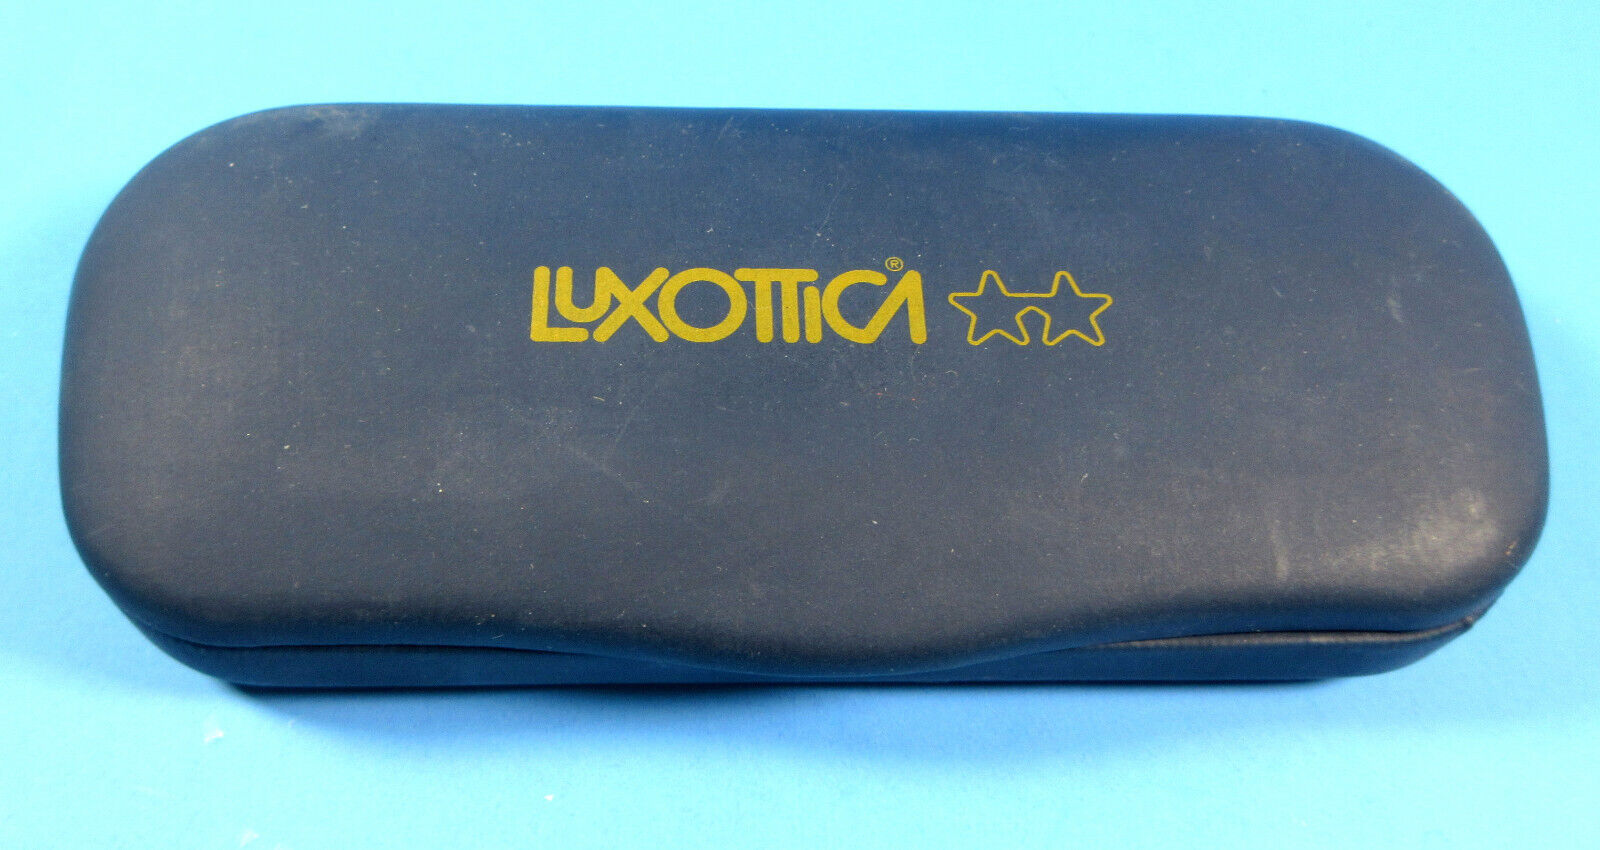 Luxottica Hard Clamshell Eyeglasses Case Blue Velvet Interior - $9.85